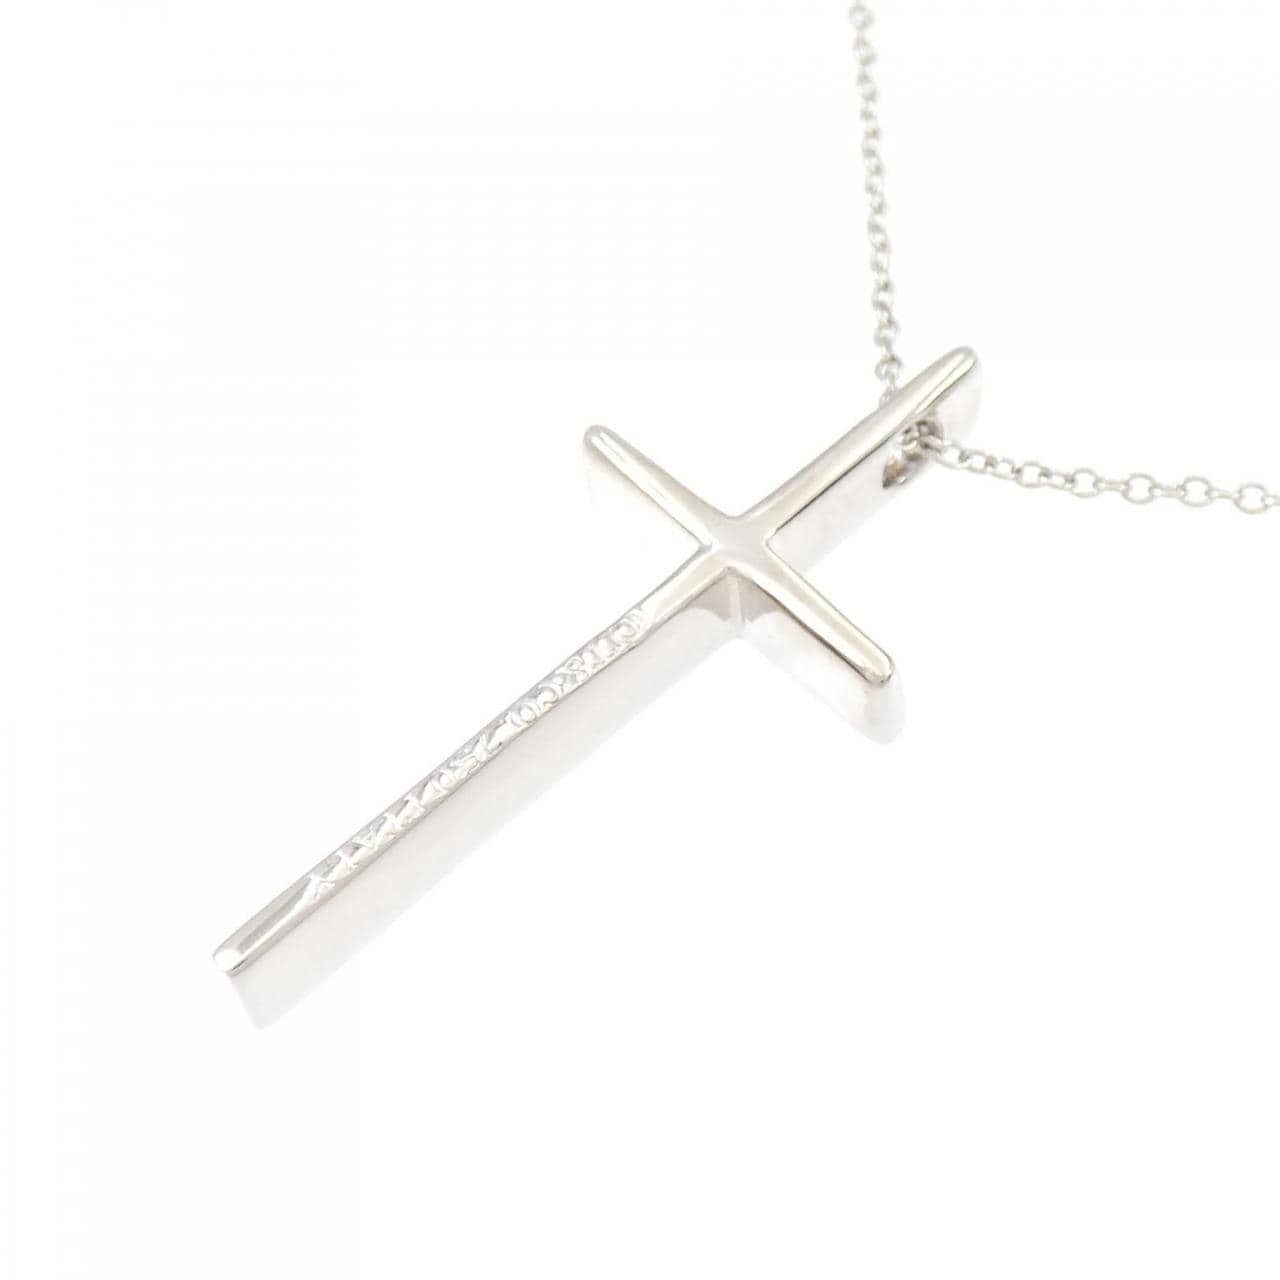 TIFFANY cross necklace